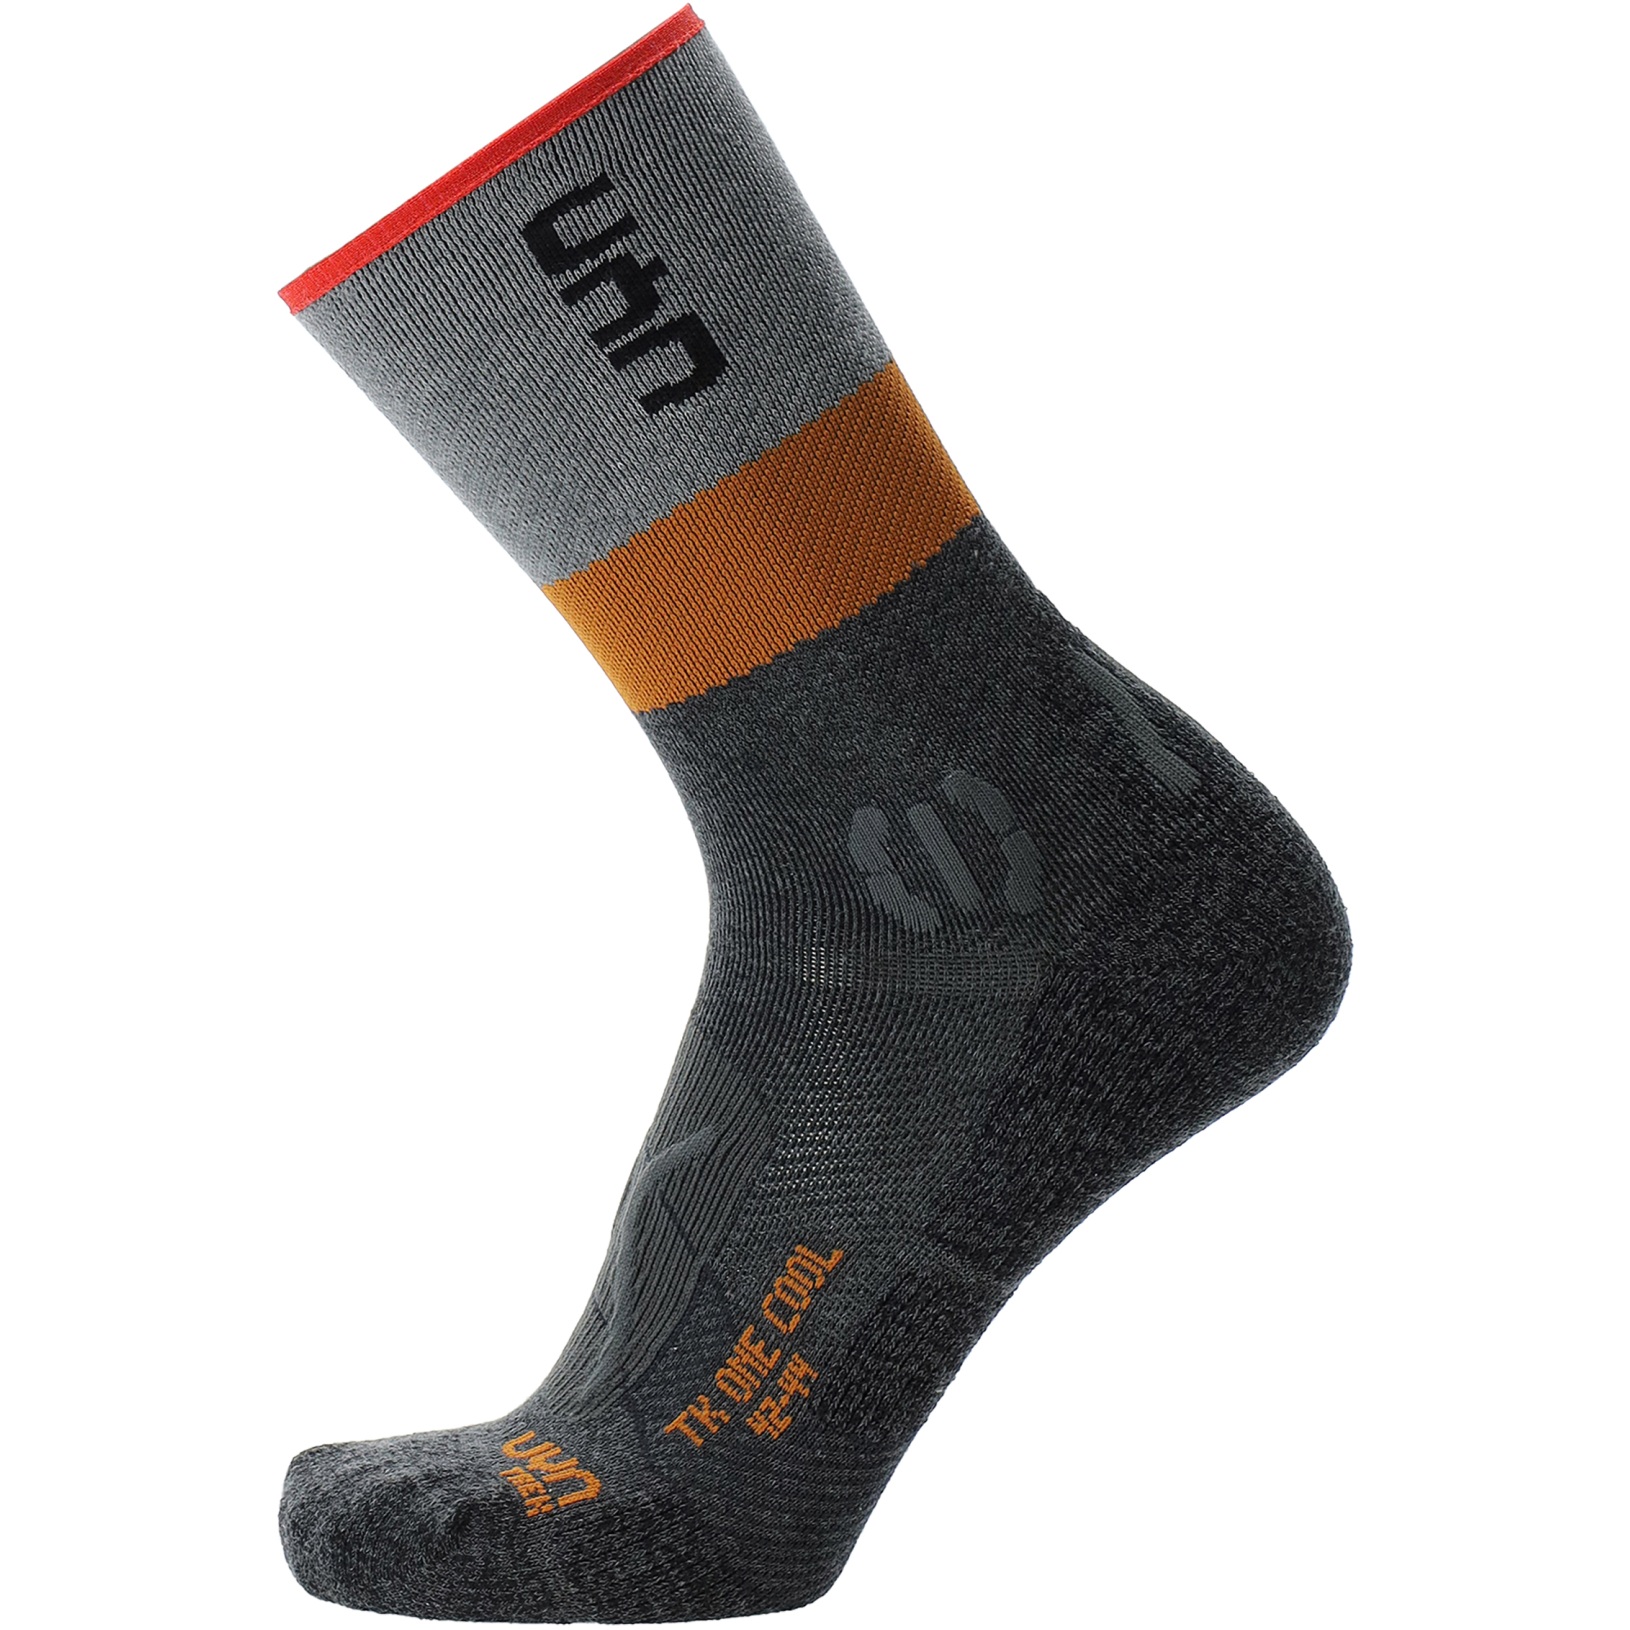 Produktbild von UYN Trekking One Cool Socken Herren - Anthracite/Grey